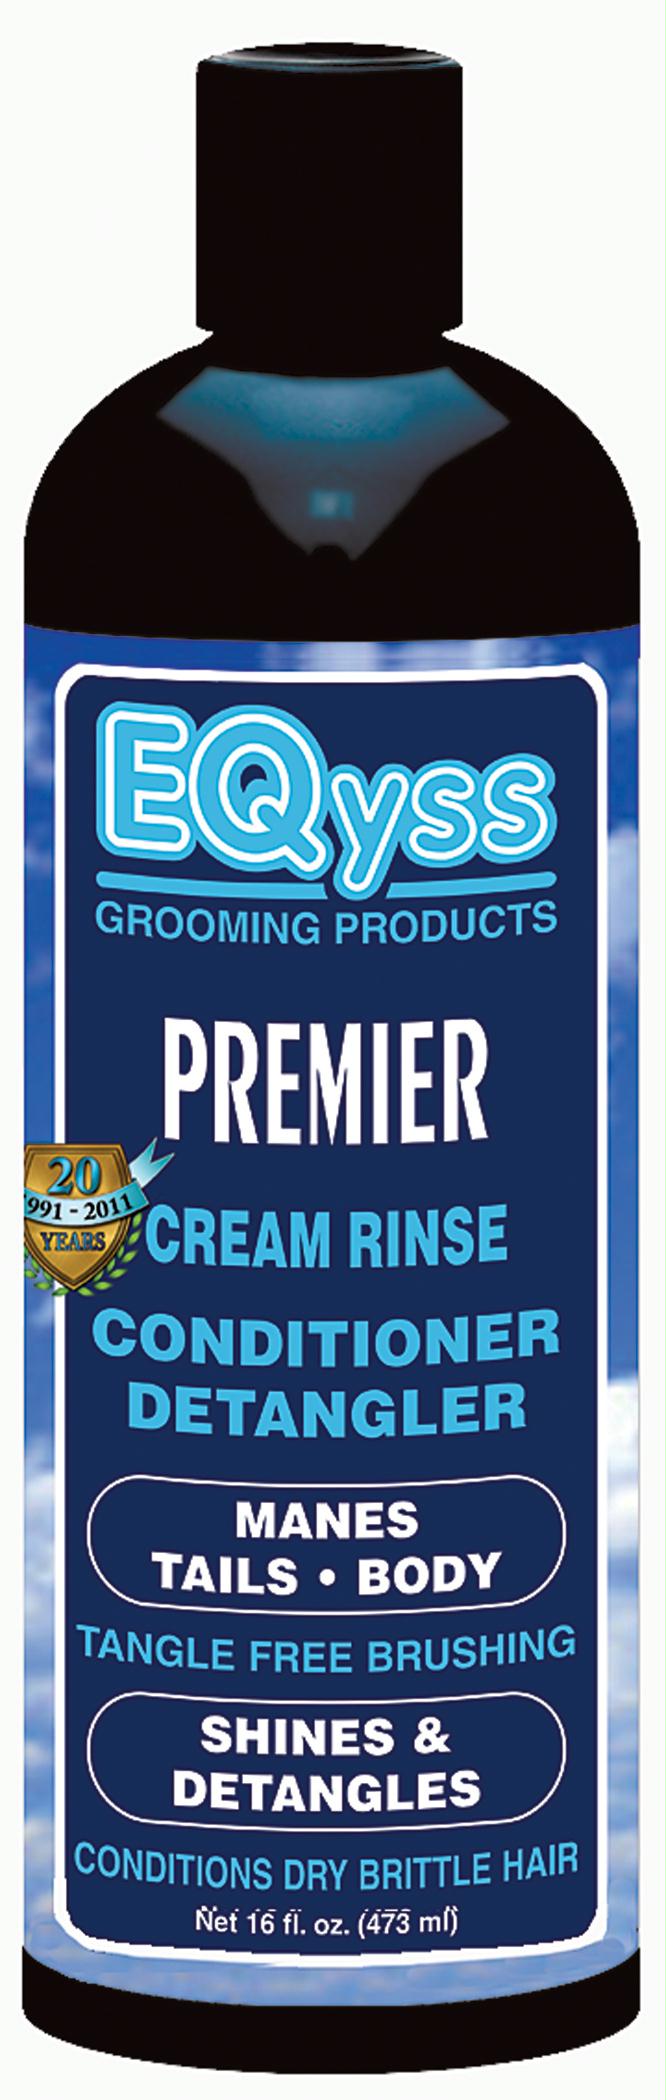 Premier Cream Rinse Conditioner Detangler - aomega-products